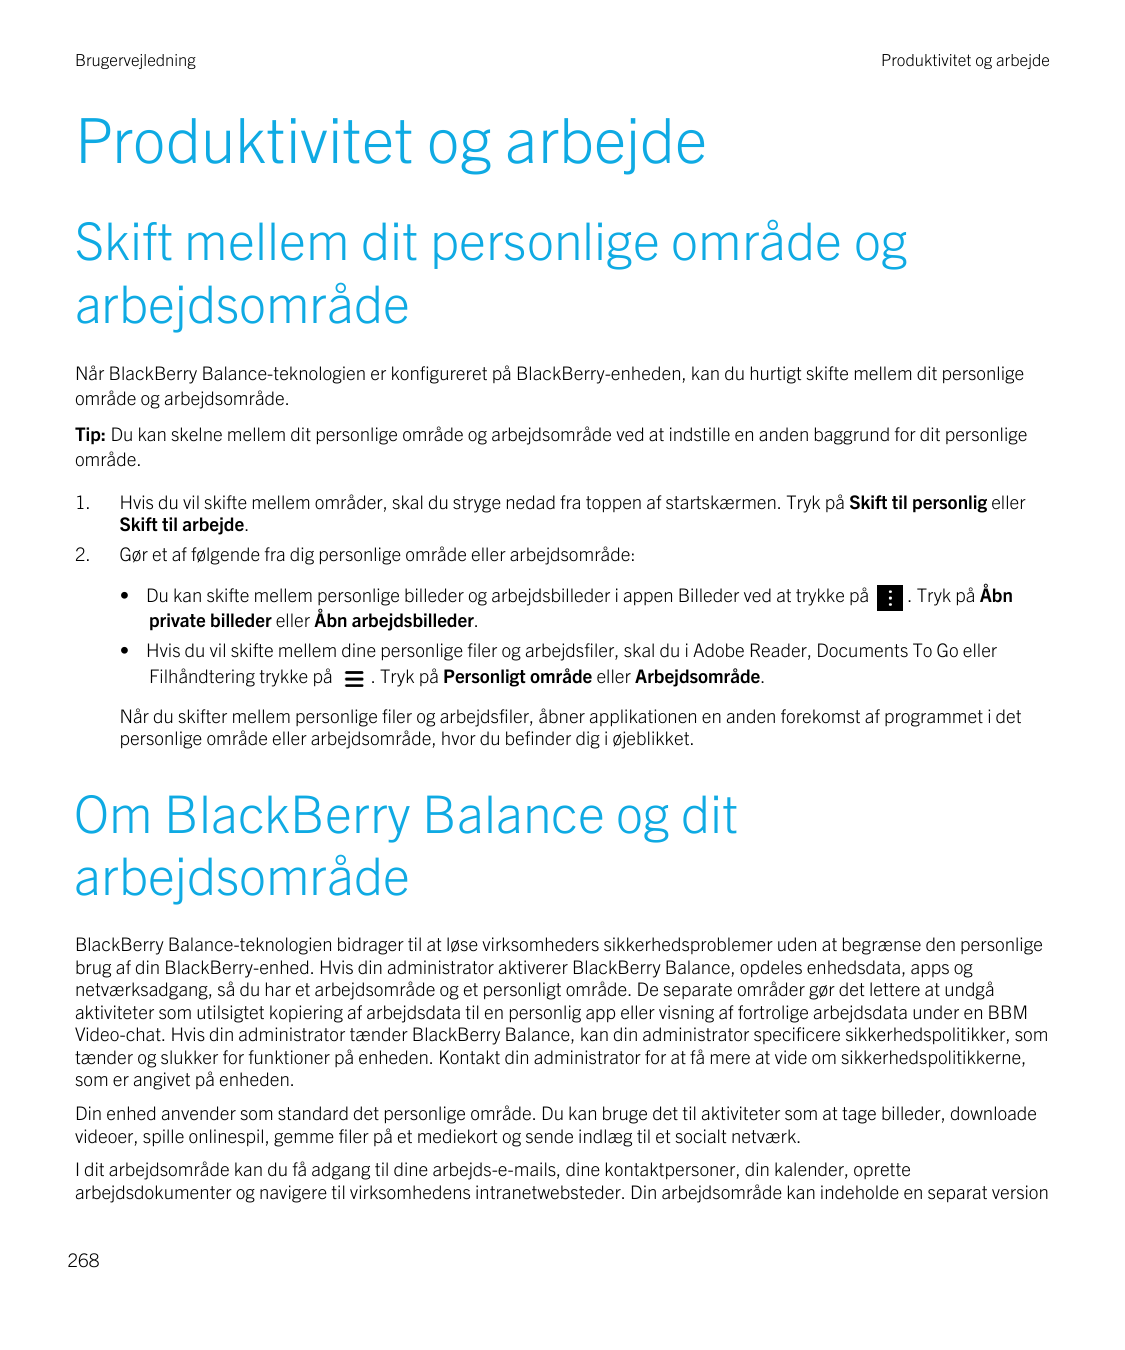 BrugervejledningProduktivitet og arbejdeProduktivitet og arbejdeSkift mellem dit personlige område ogarbejdsområdeNår BlackBerry